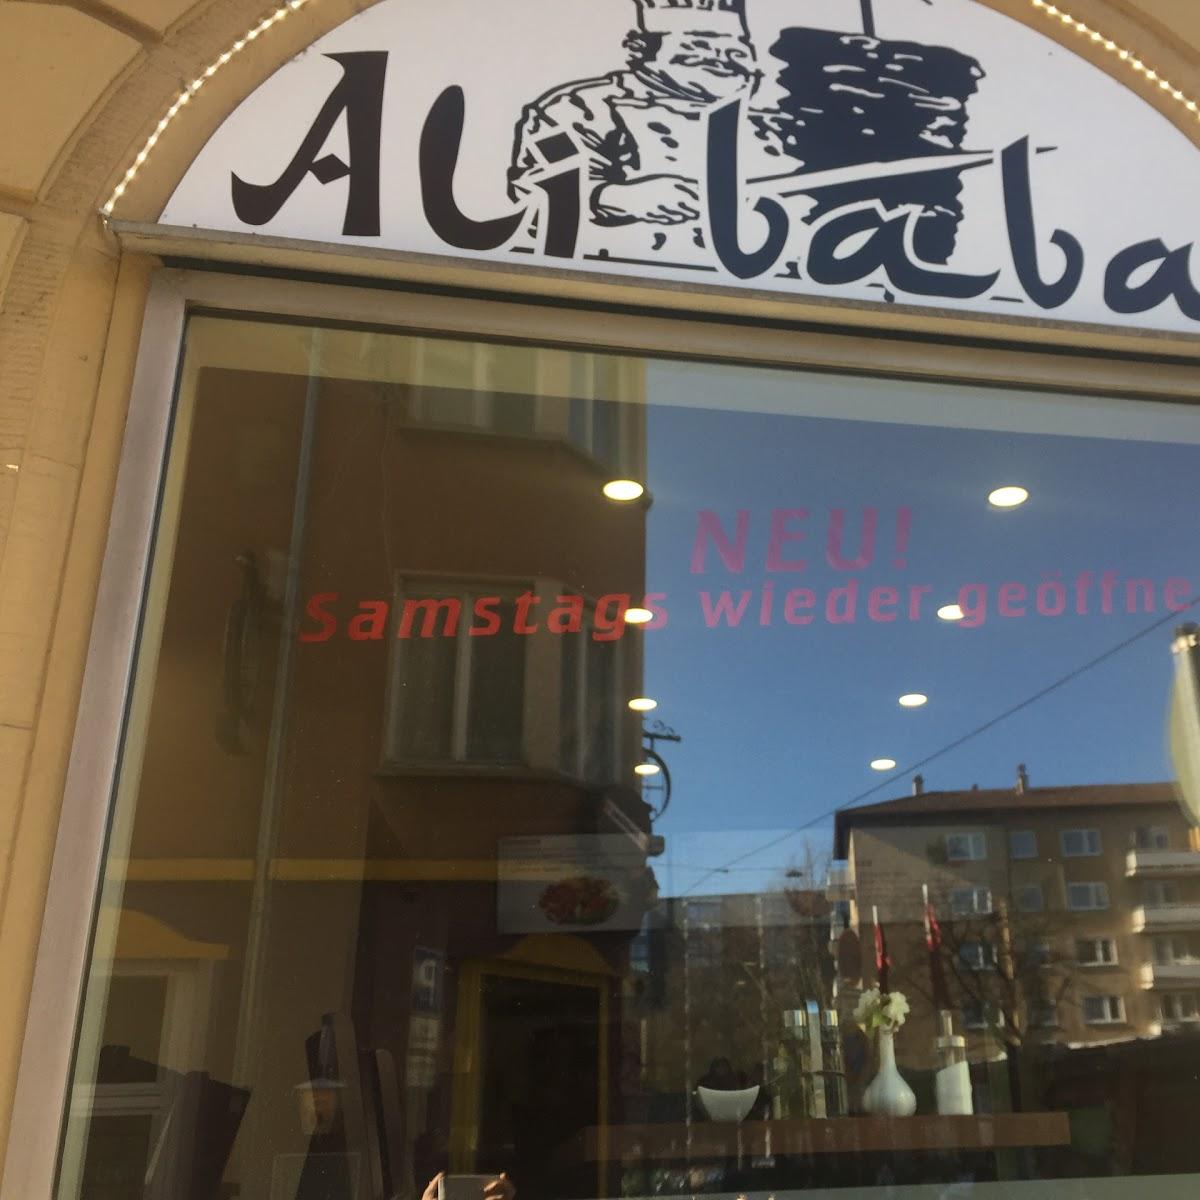 Restaurant "Ali baba imbiss" in  Pforzheim